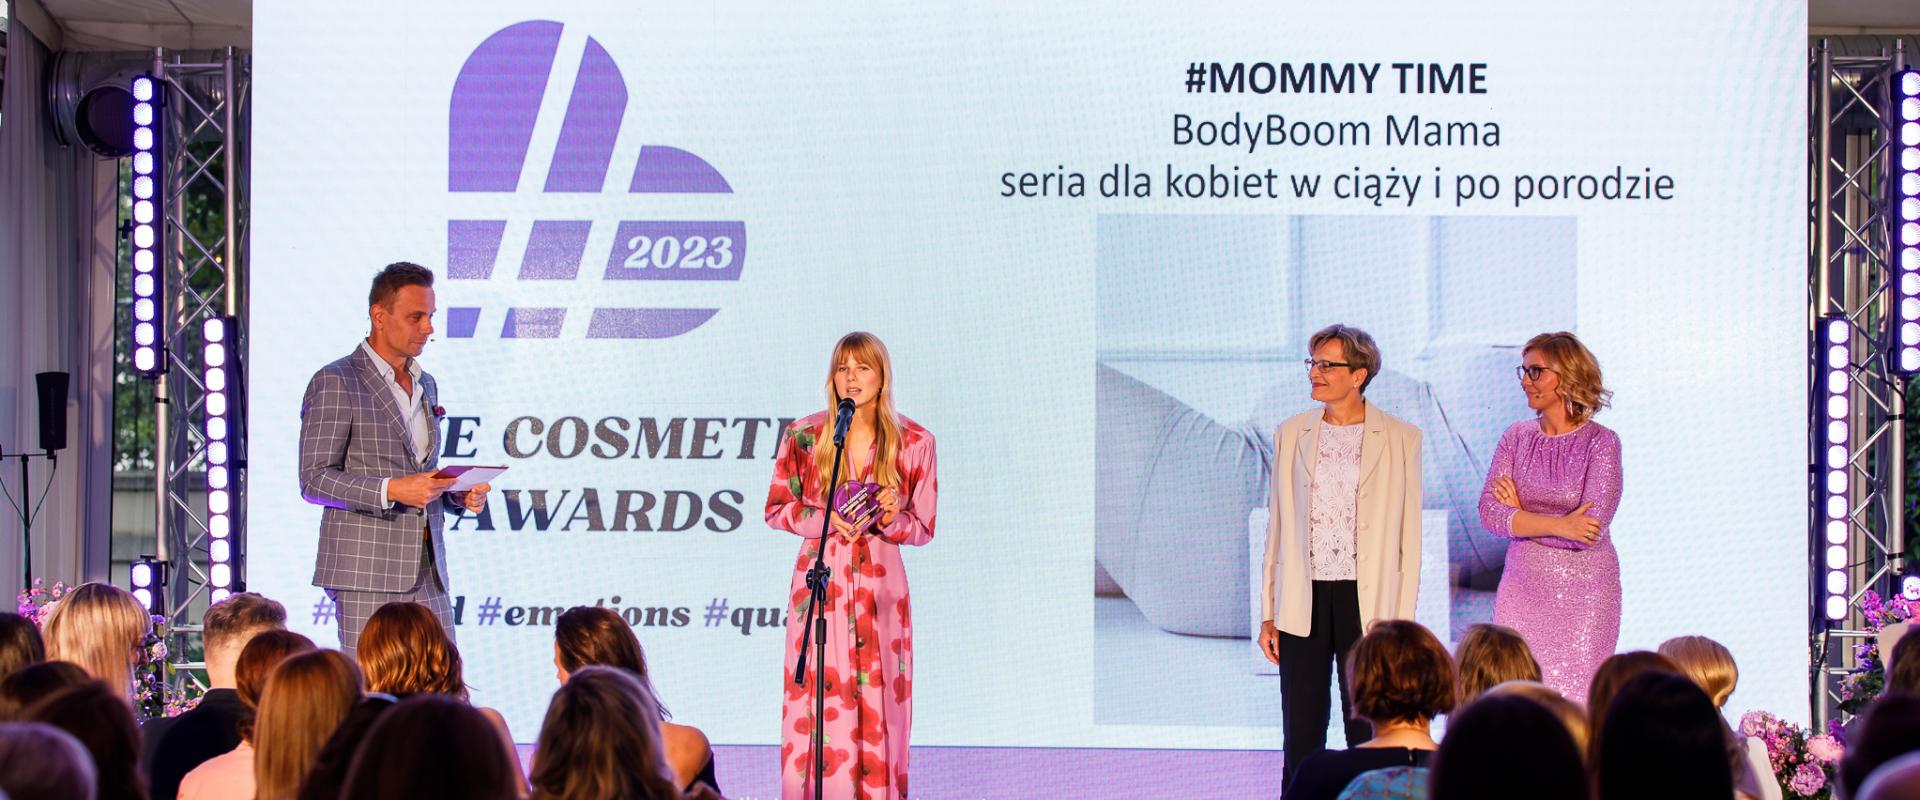 BodyBoom Mama zwycięża w kategorii Mommy Time Love Cosmetics Awards